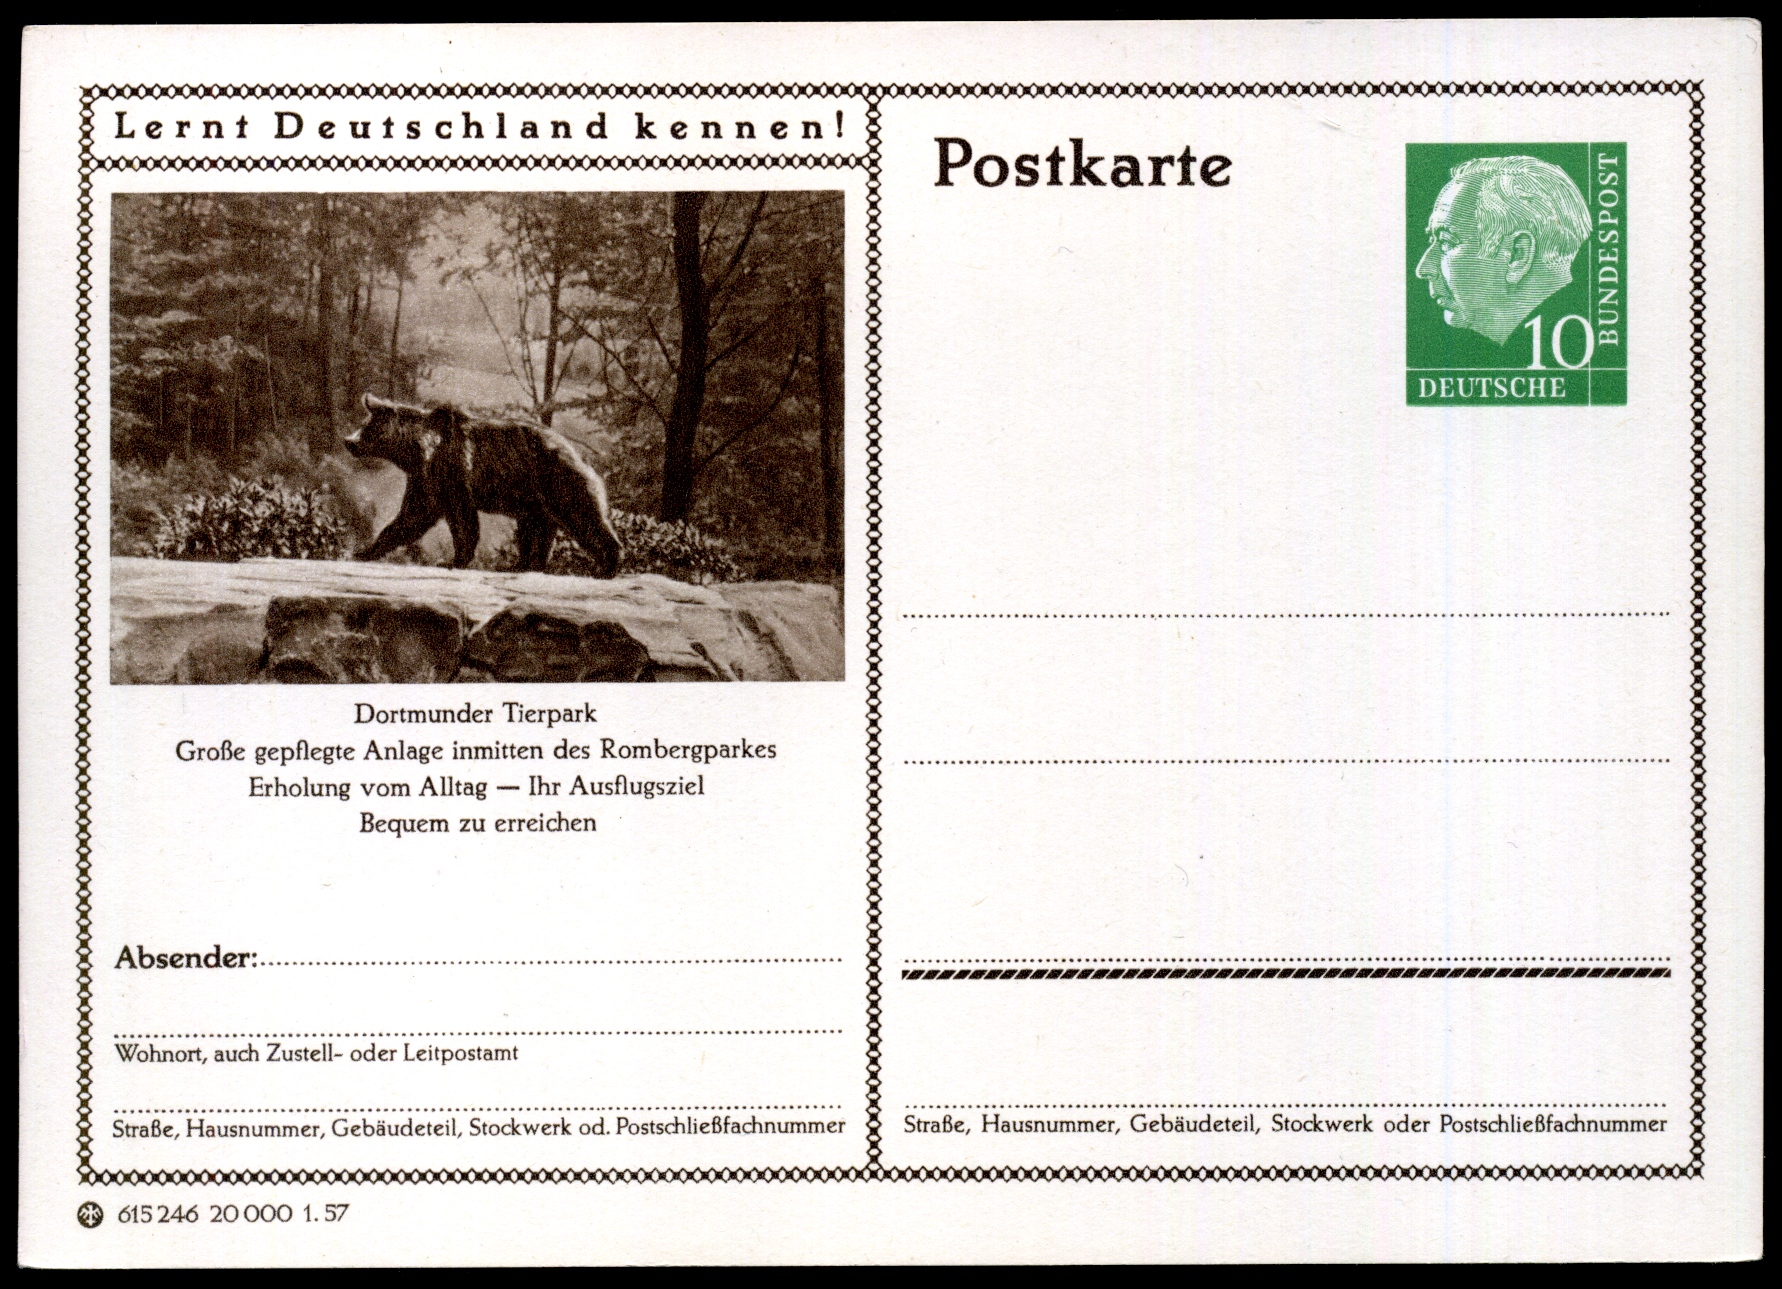 1955: Dortmunder Tierpark